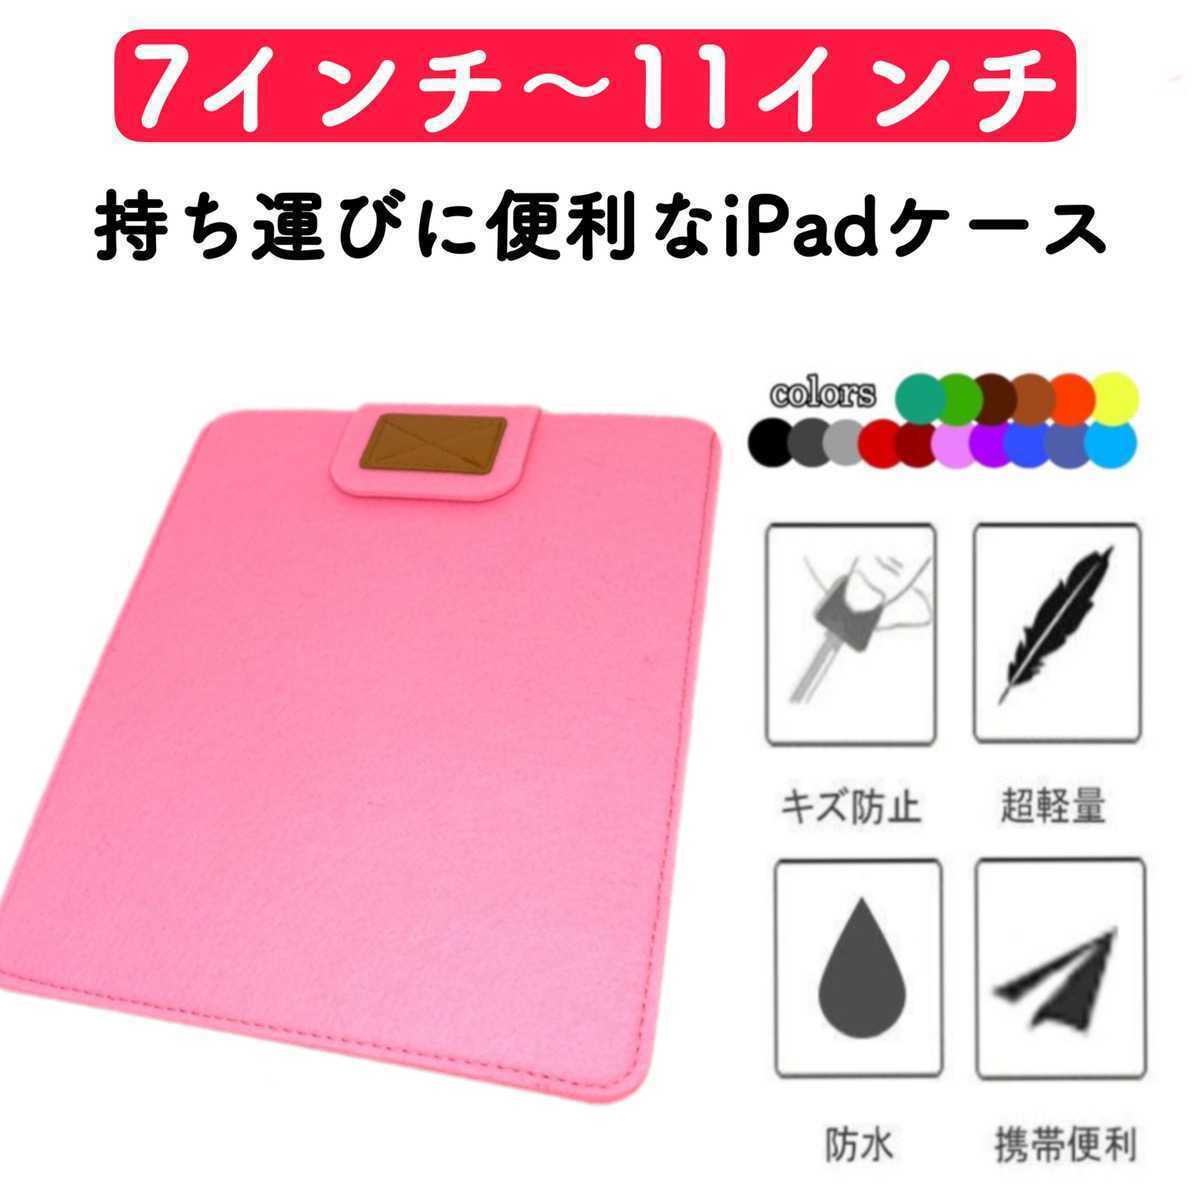 タブレットケース iPadケース コンパクト 薄型 フェルト カバー ピンク 激安 7インチ 8インチ 9インチ 10インチ 11インチ 保護ケース